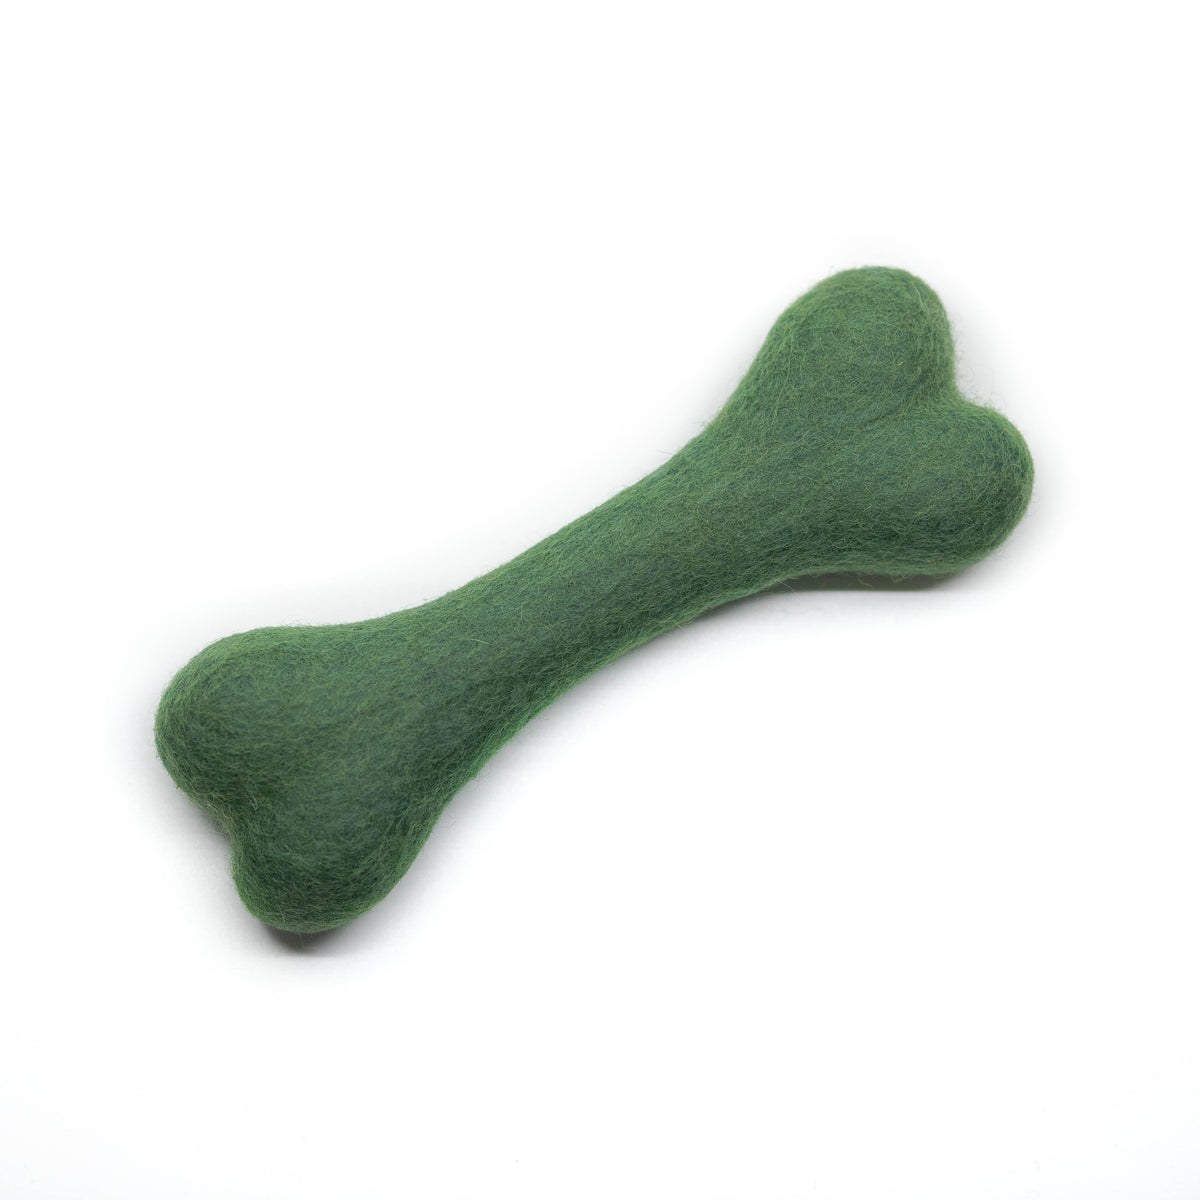 Wool Dog Bone Toy - Cactus